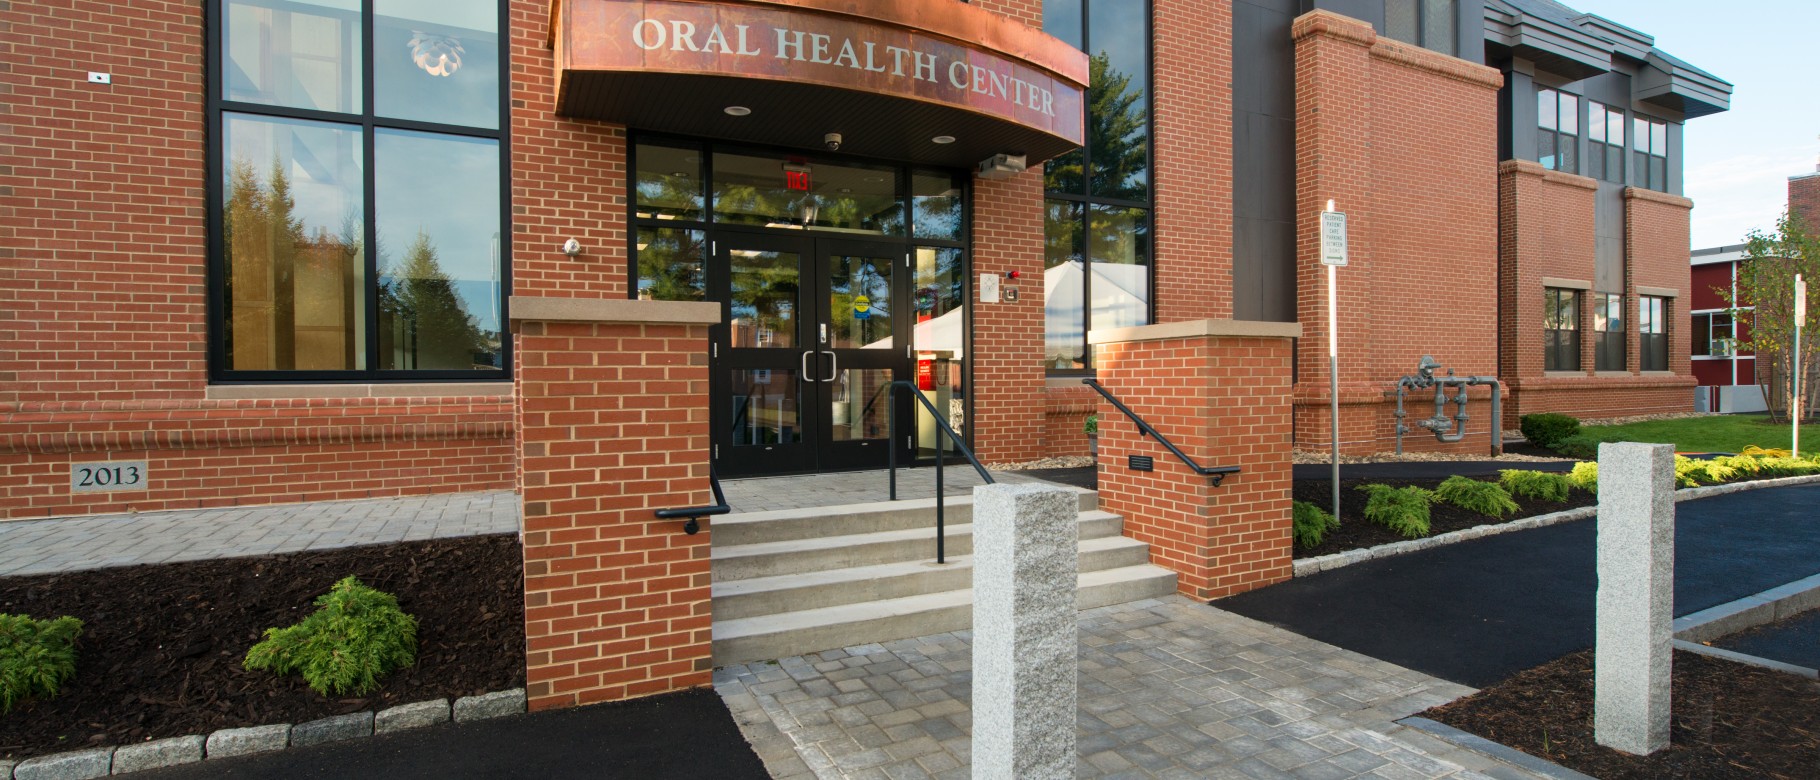 UNE's Oral Health Center